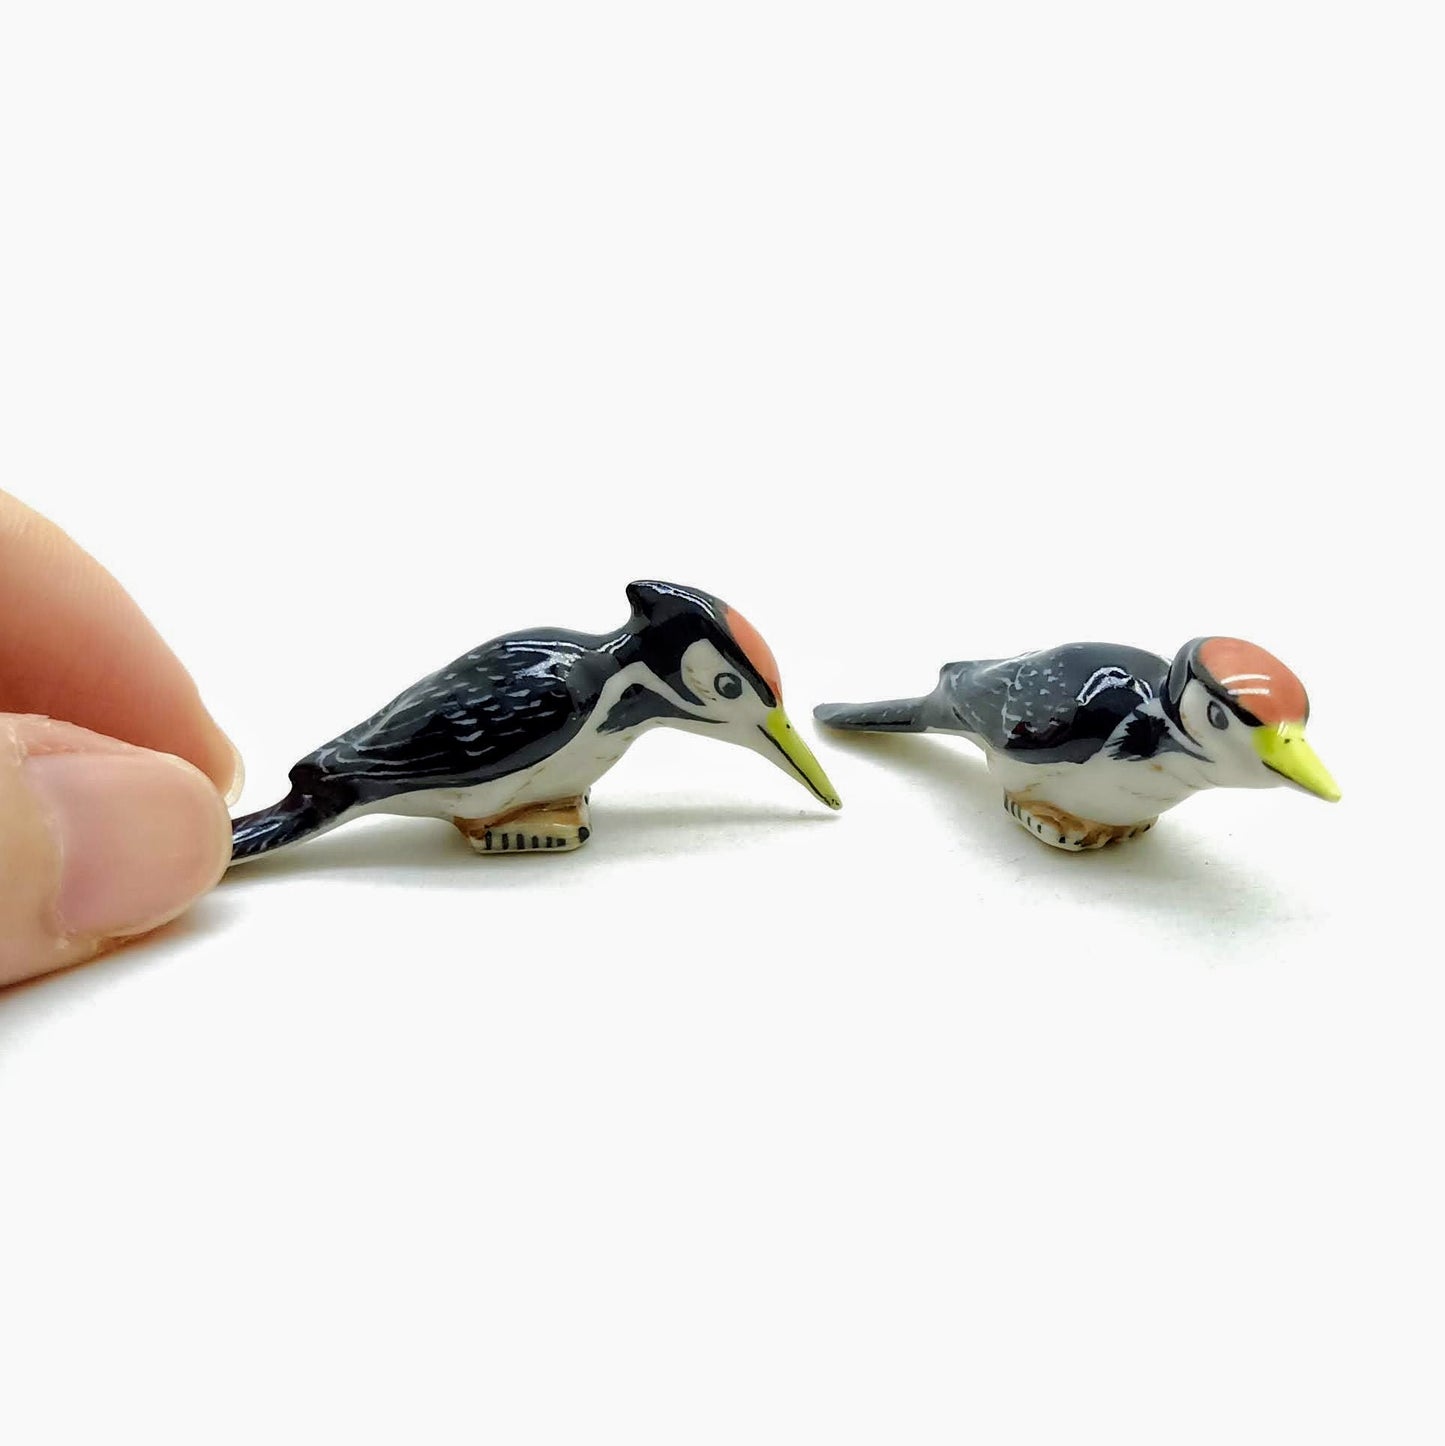 2 Woodpecker Birds